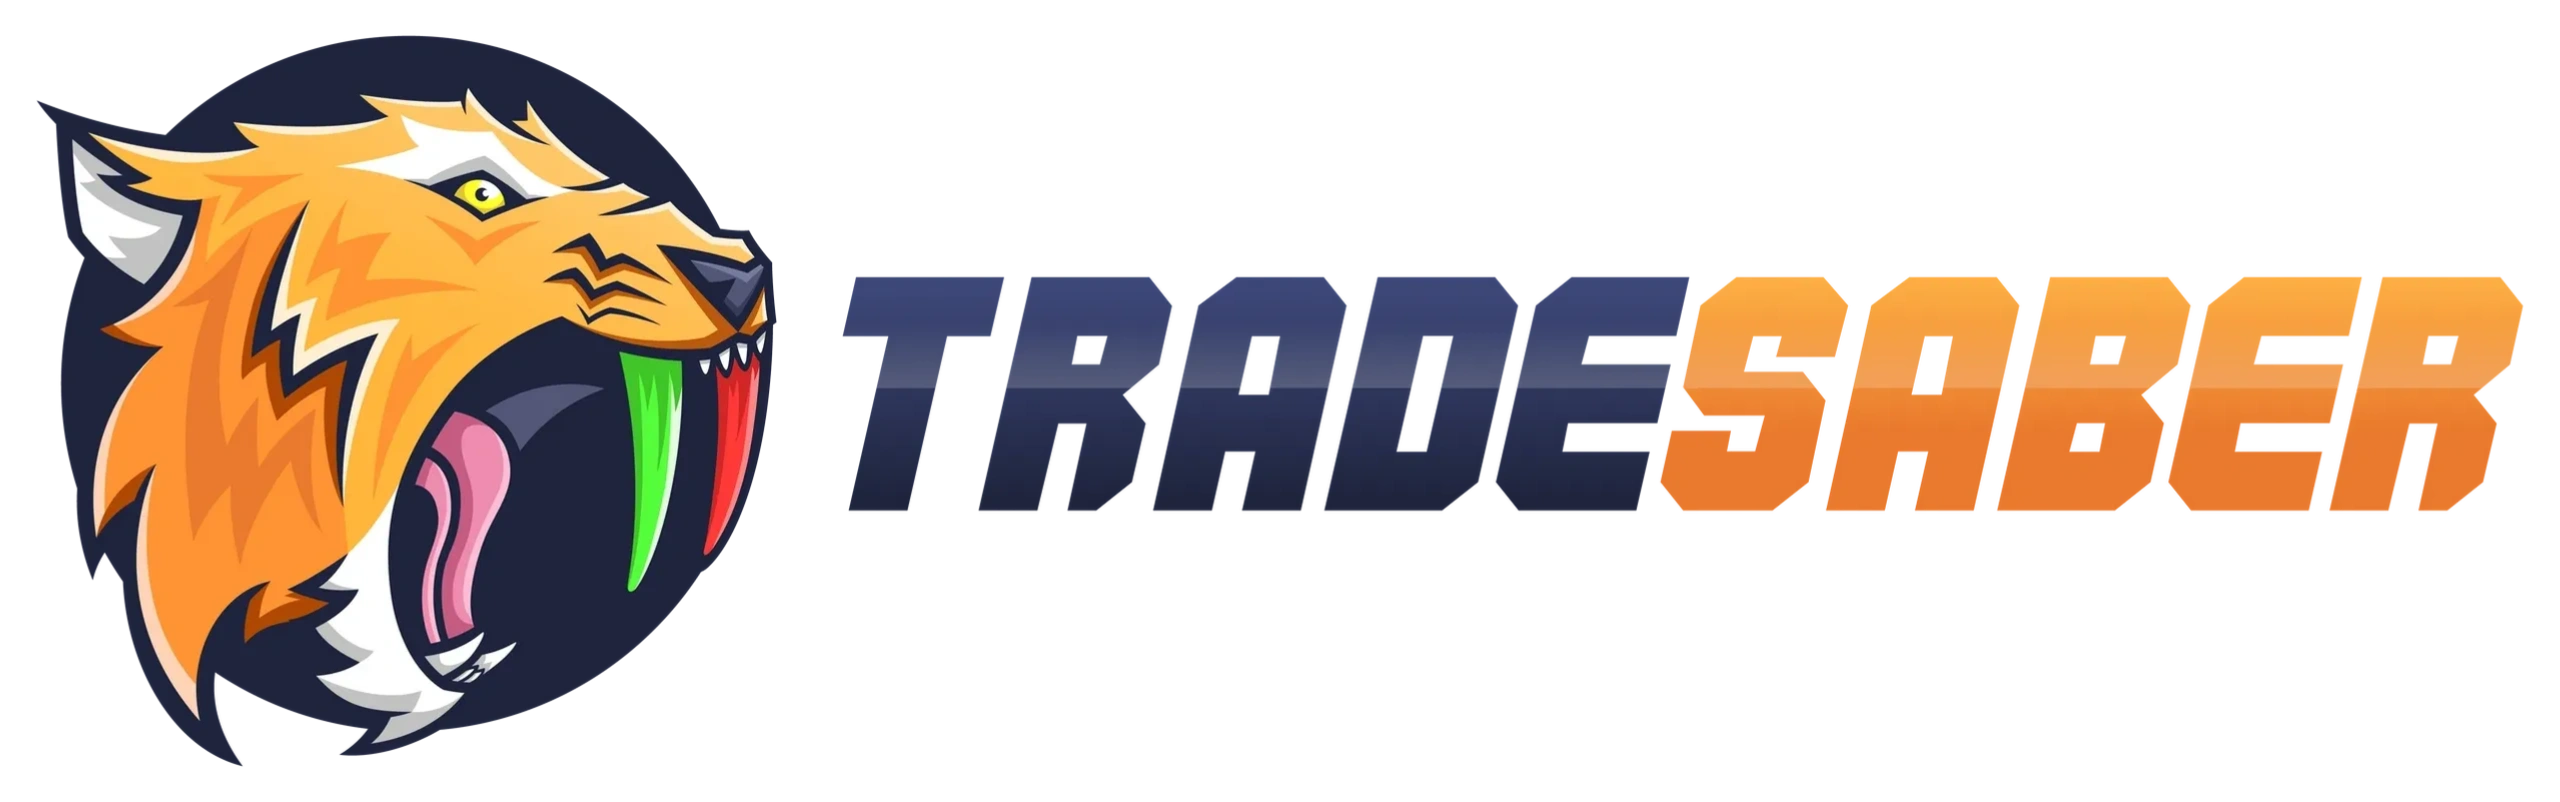 TradeSaber Logo